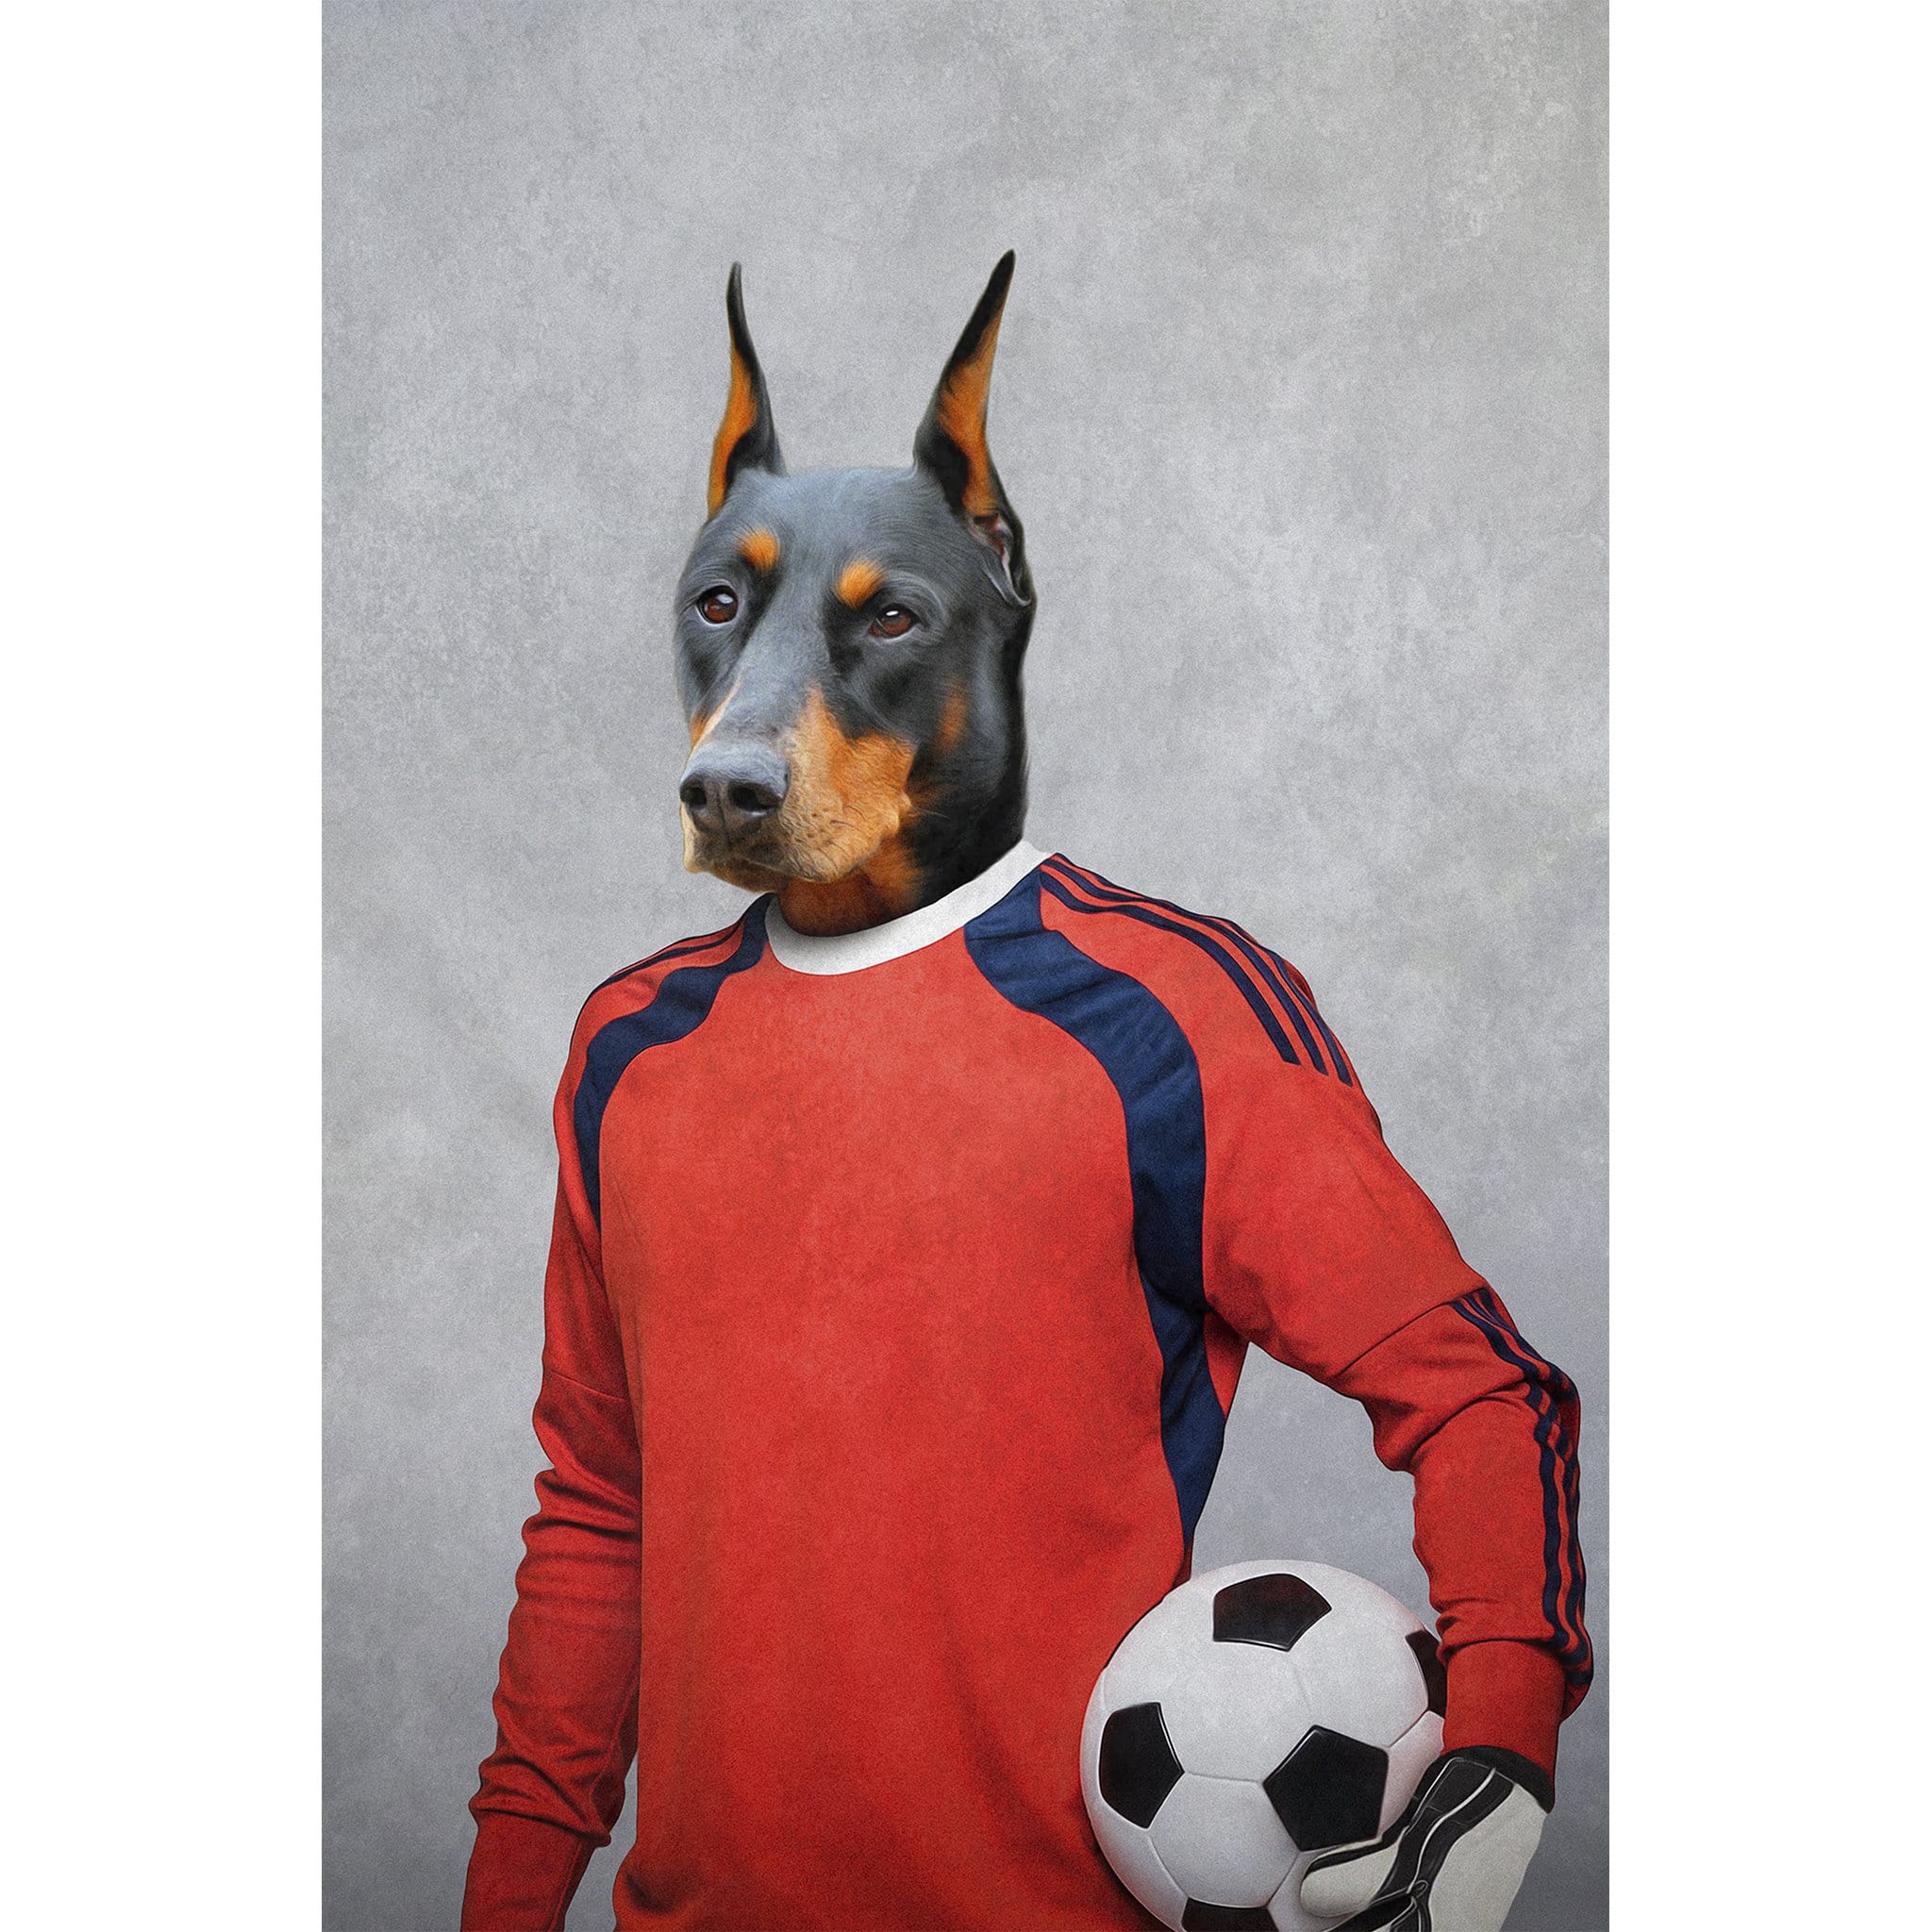 &#39;The Soccer Goalie&#39; Digital Portrait